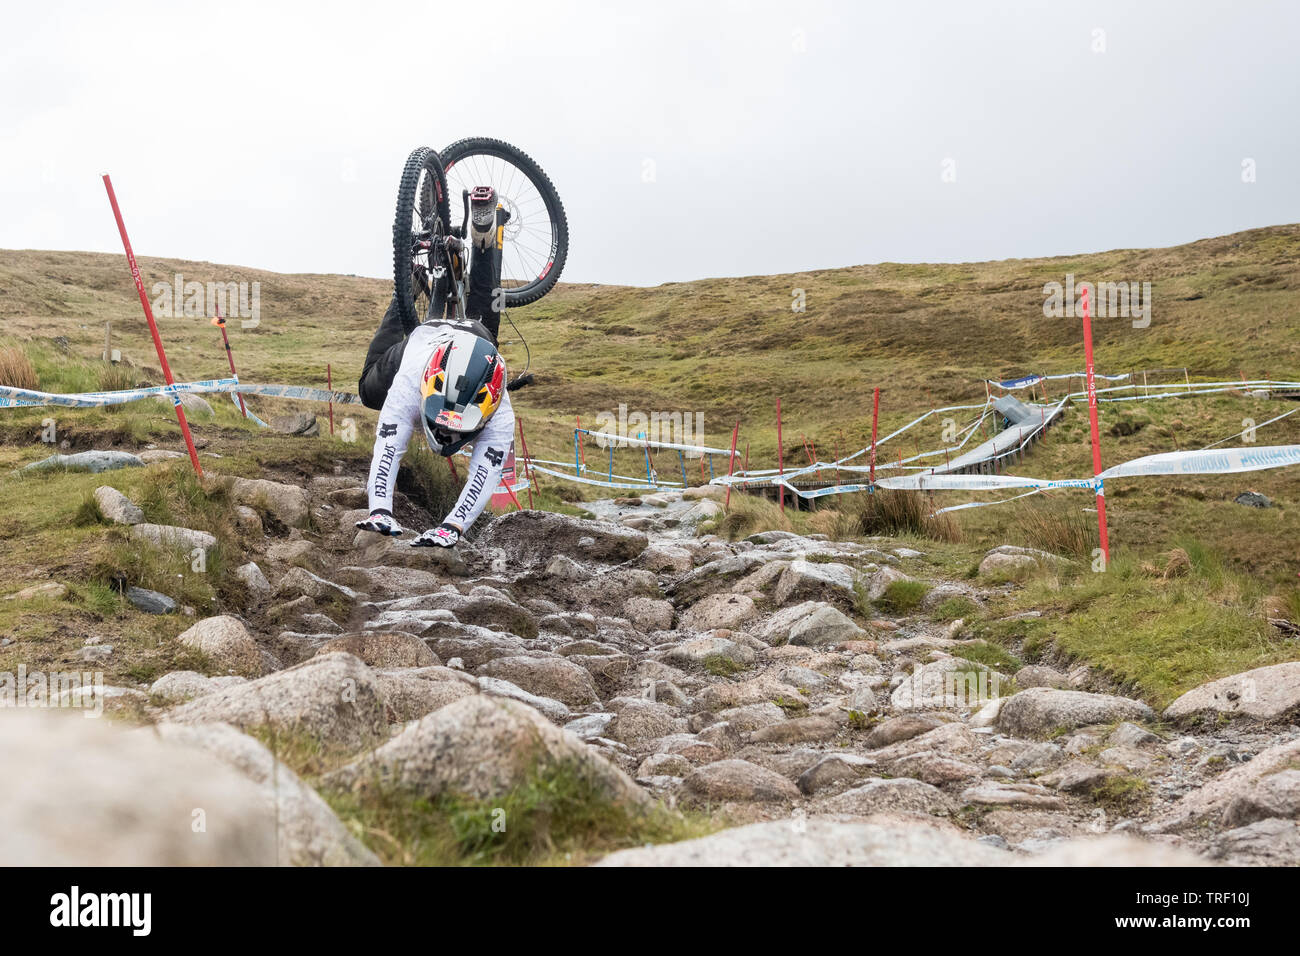 Finn crash Sequenz Iles während der Praxis laufen - UCI Mountainbike Weltcup in Fort William, Schottland - Serie von 13 Bilder Bild 8/13 Stockfoto